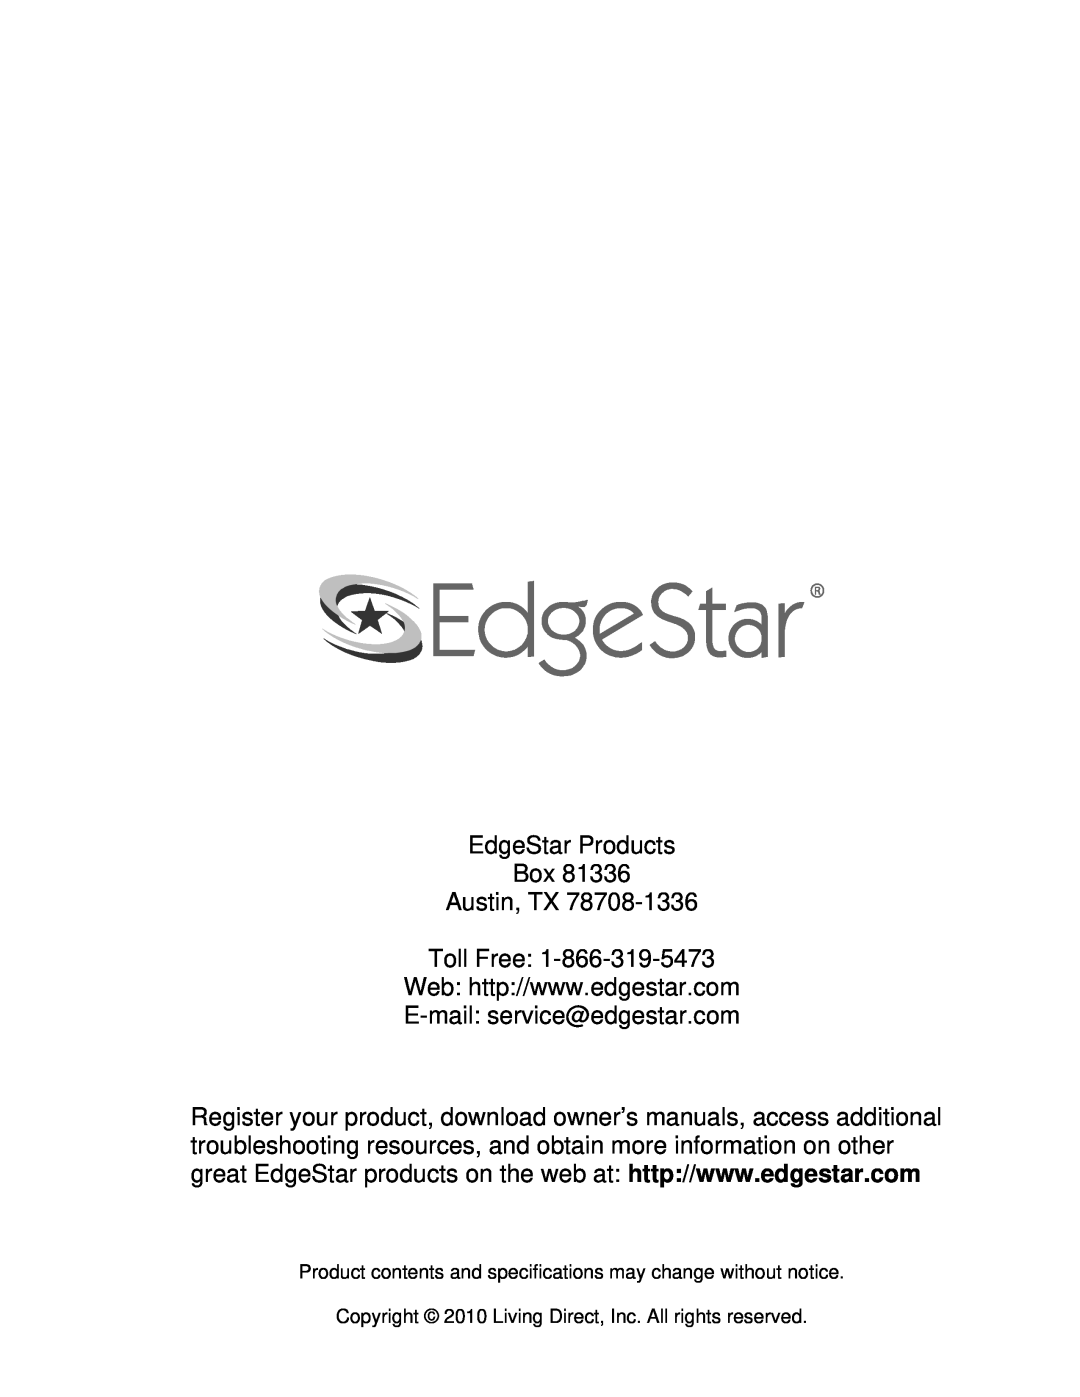 EdgeStar IB1000SS, IB1500SS, IB650SS owner manual EdgeStar Products Box Austin, TX Toll Free, E-mail service@edgestar.com 